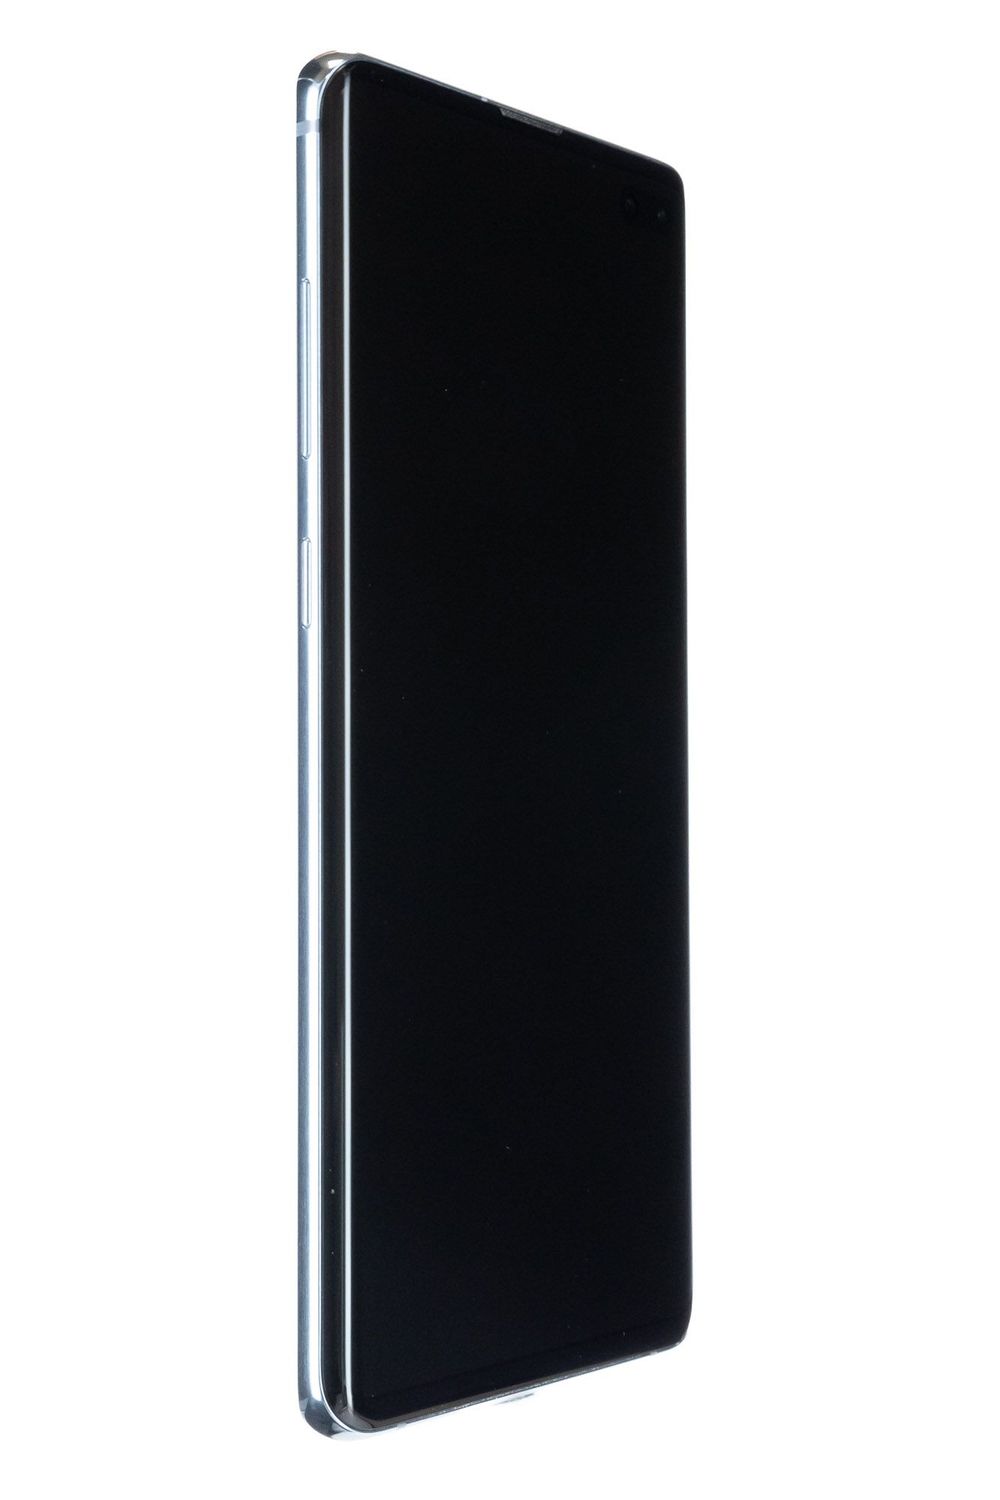 Κινητό τηλέφωνο Samsung Galaxy S10 Plus Dual Sim, Prism Blue, 512 GB, Bun